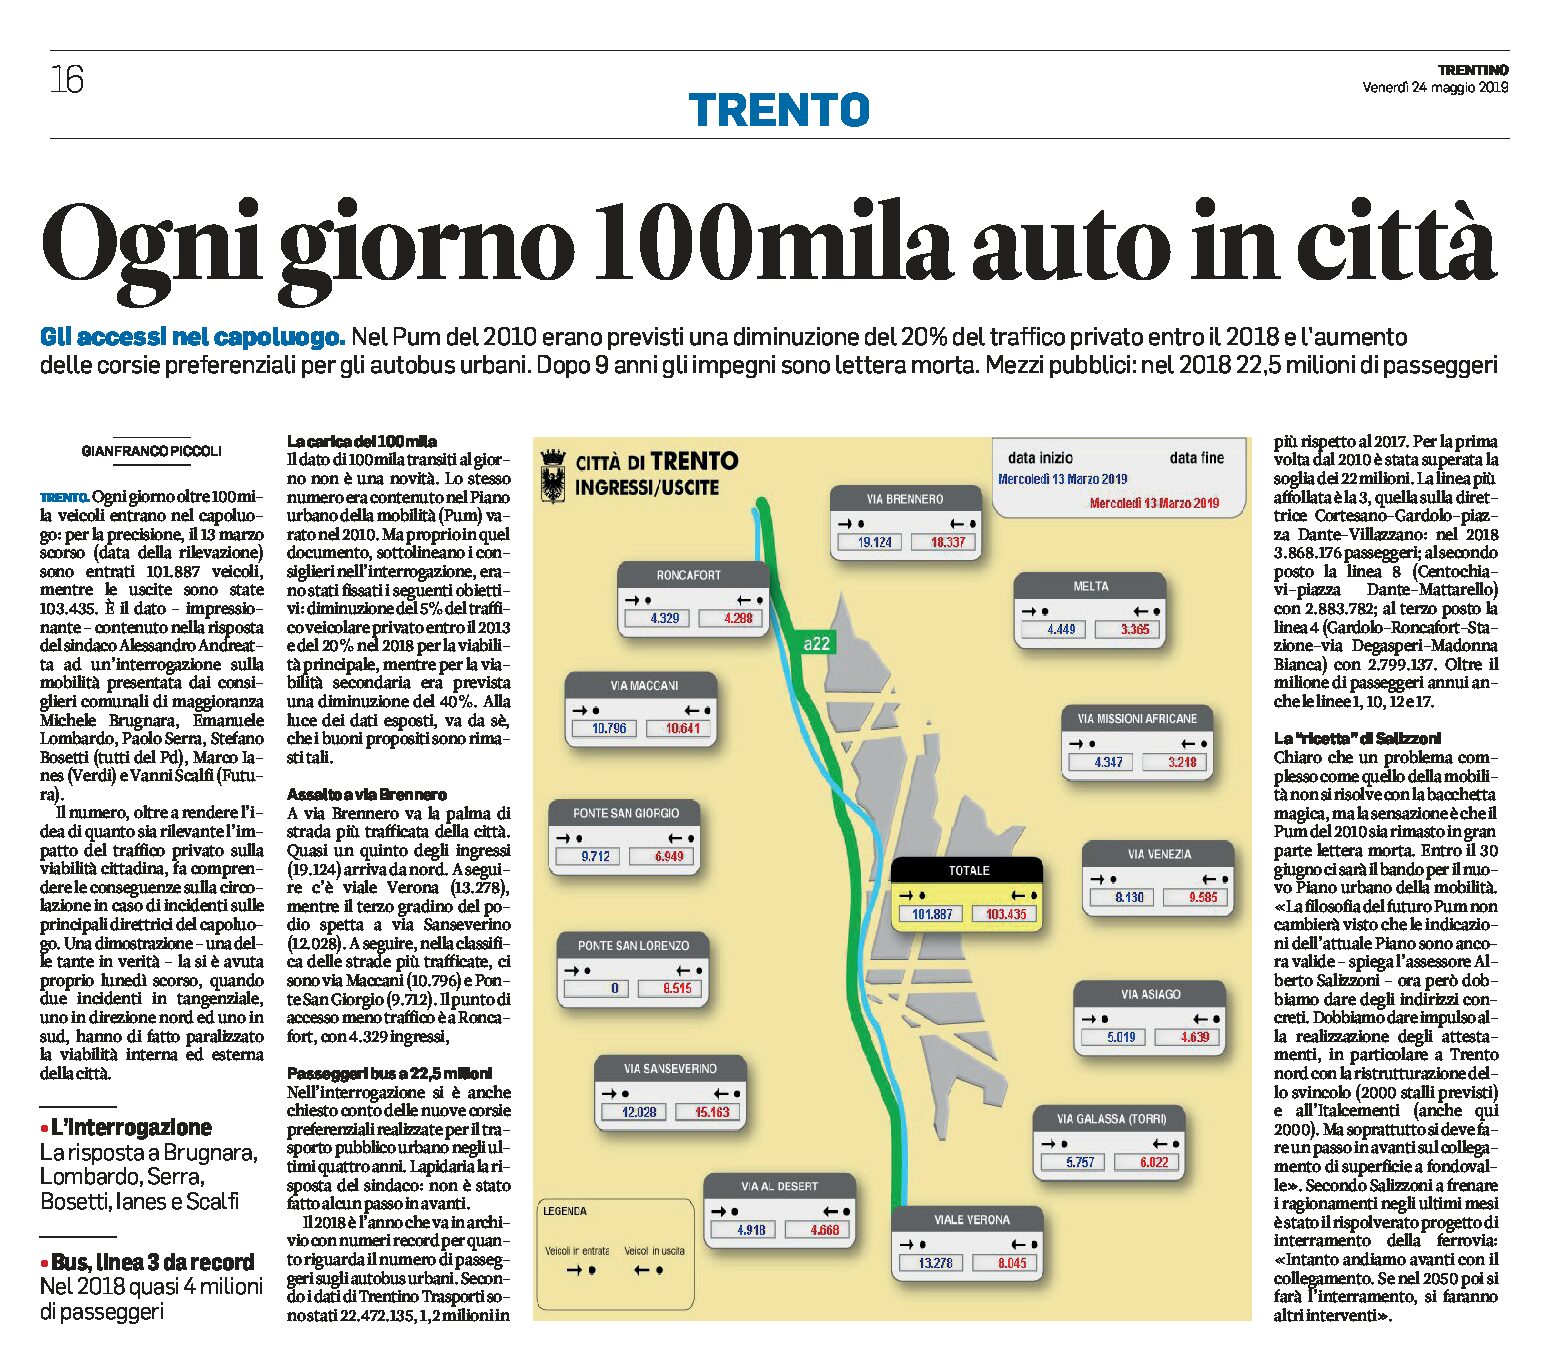 Trento: ogni giorno 100mila auto in città